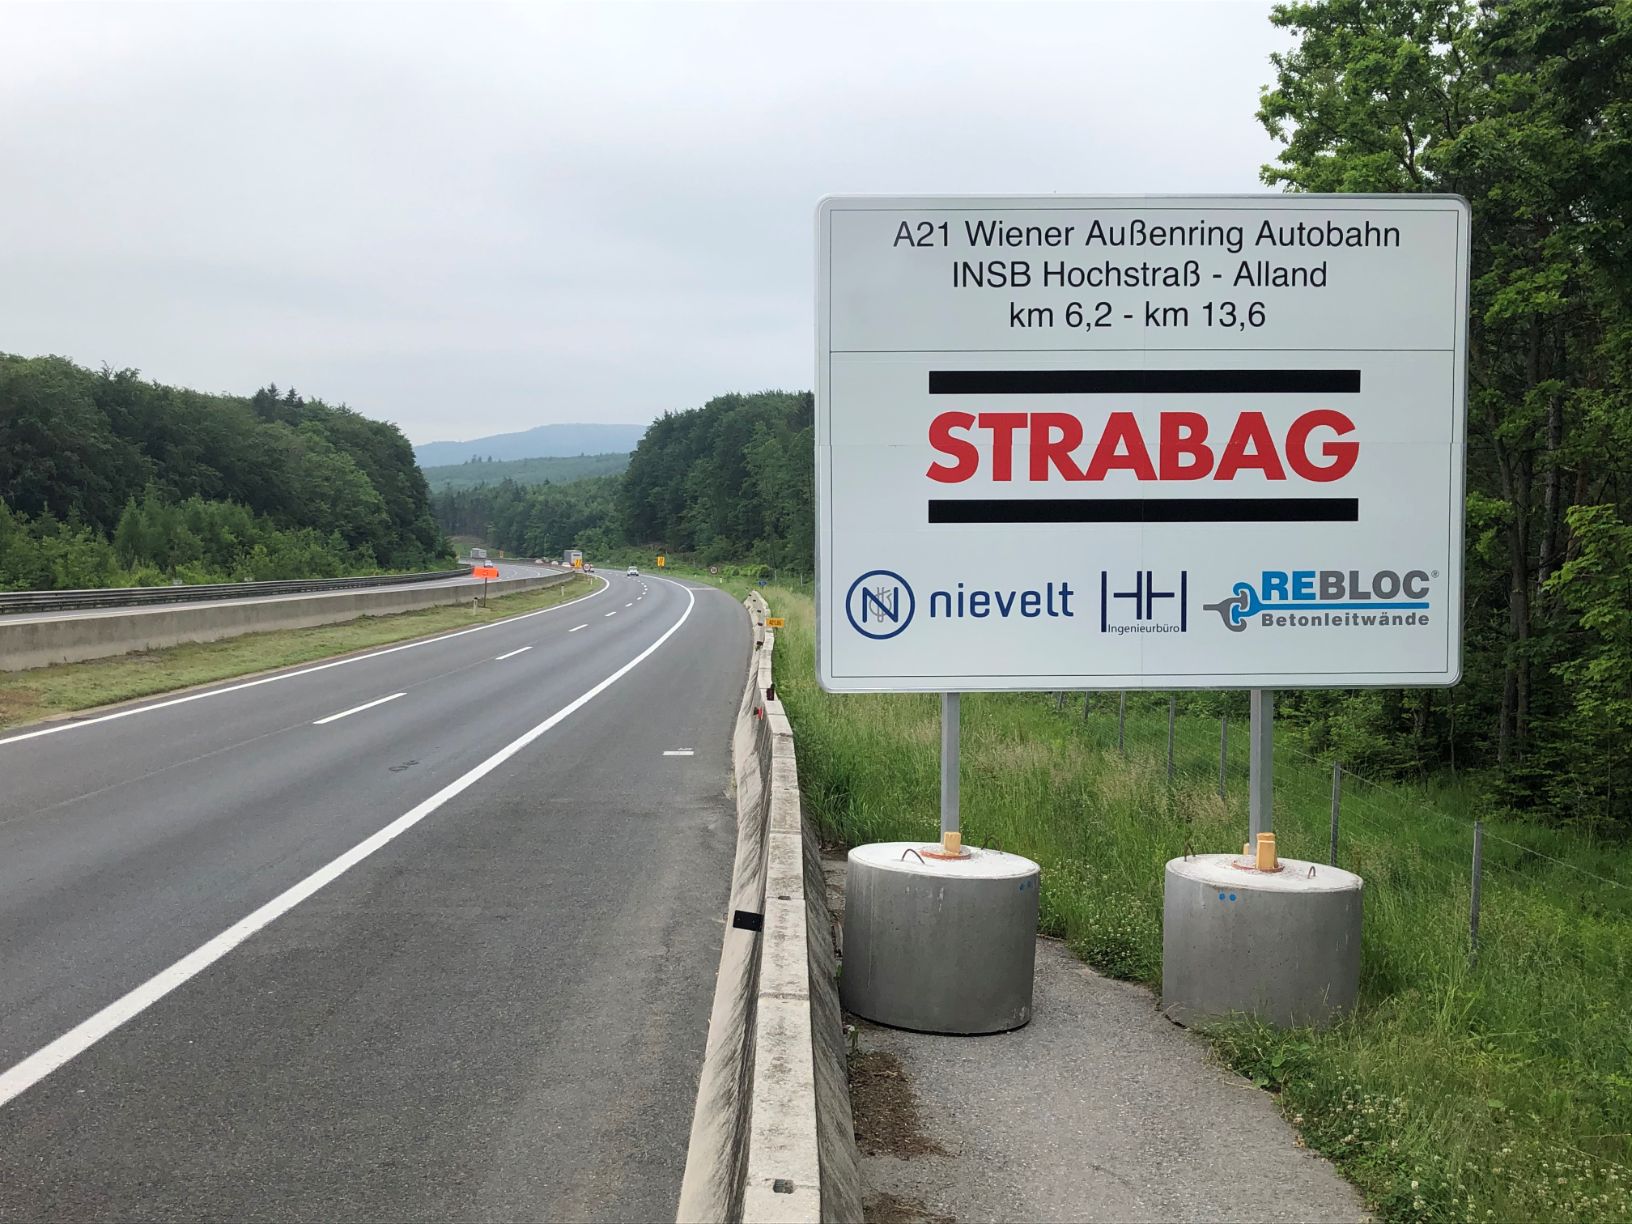 A21 Wiener Außenring Autobahn, Hochstraß - Alland (2020)